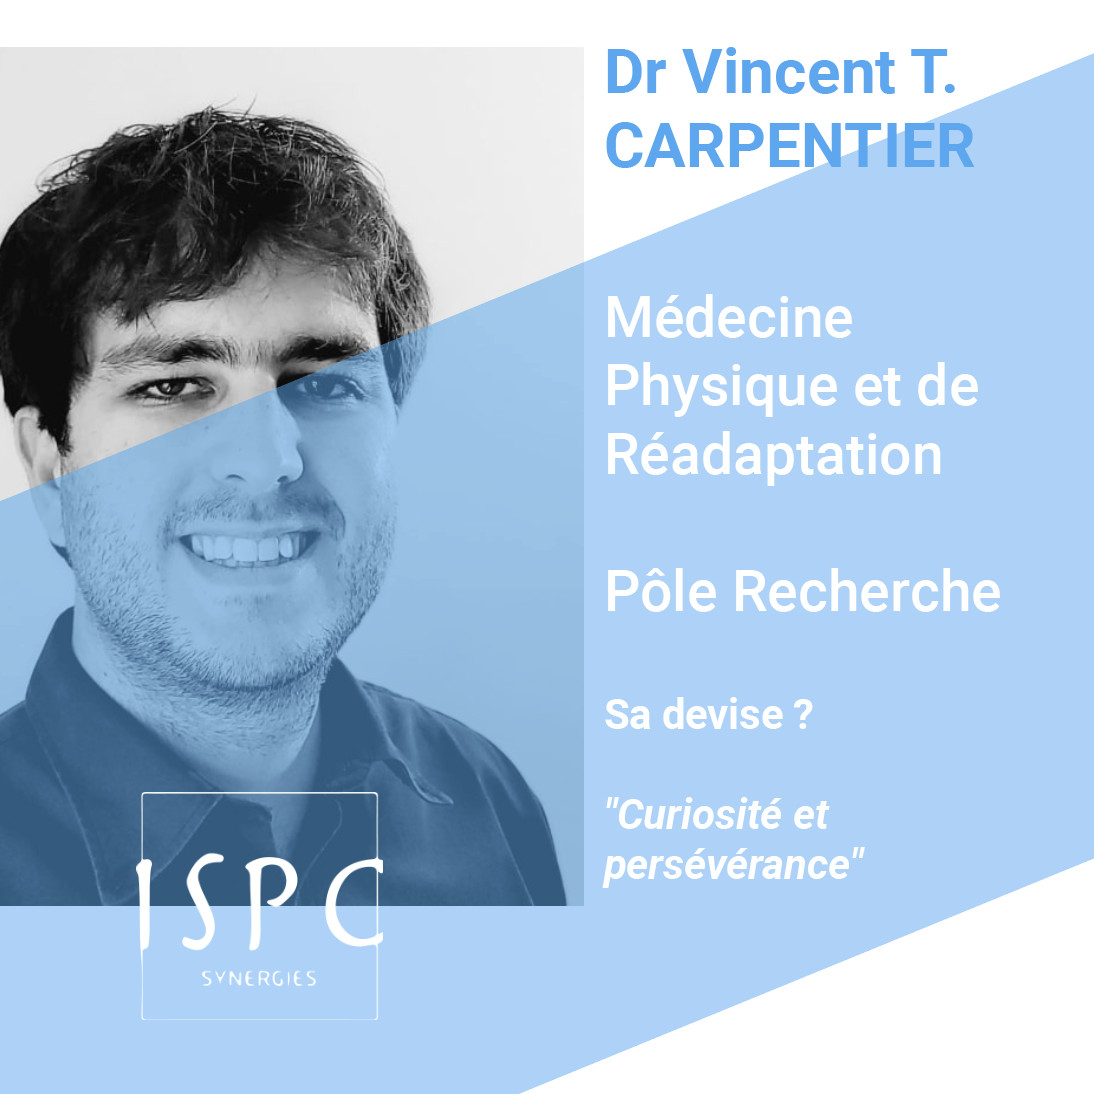 Vincent CARPENTIER, médecin de Médecine Physique et de Réadaptation ISPC